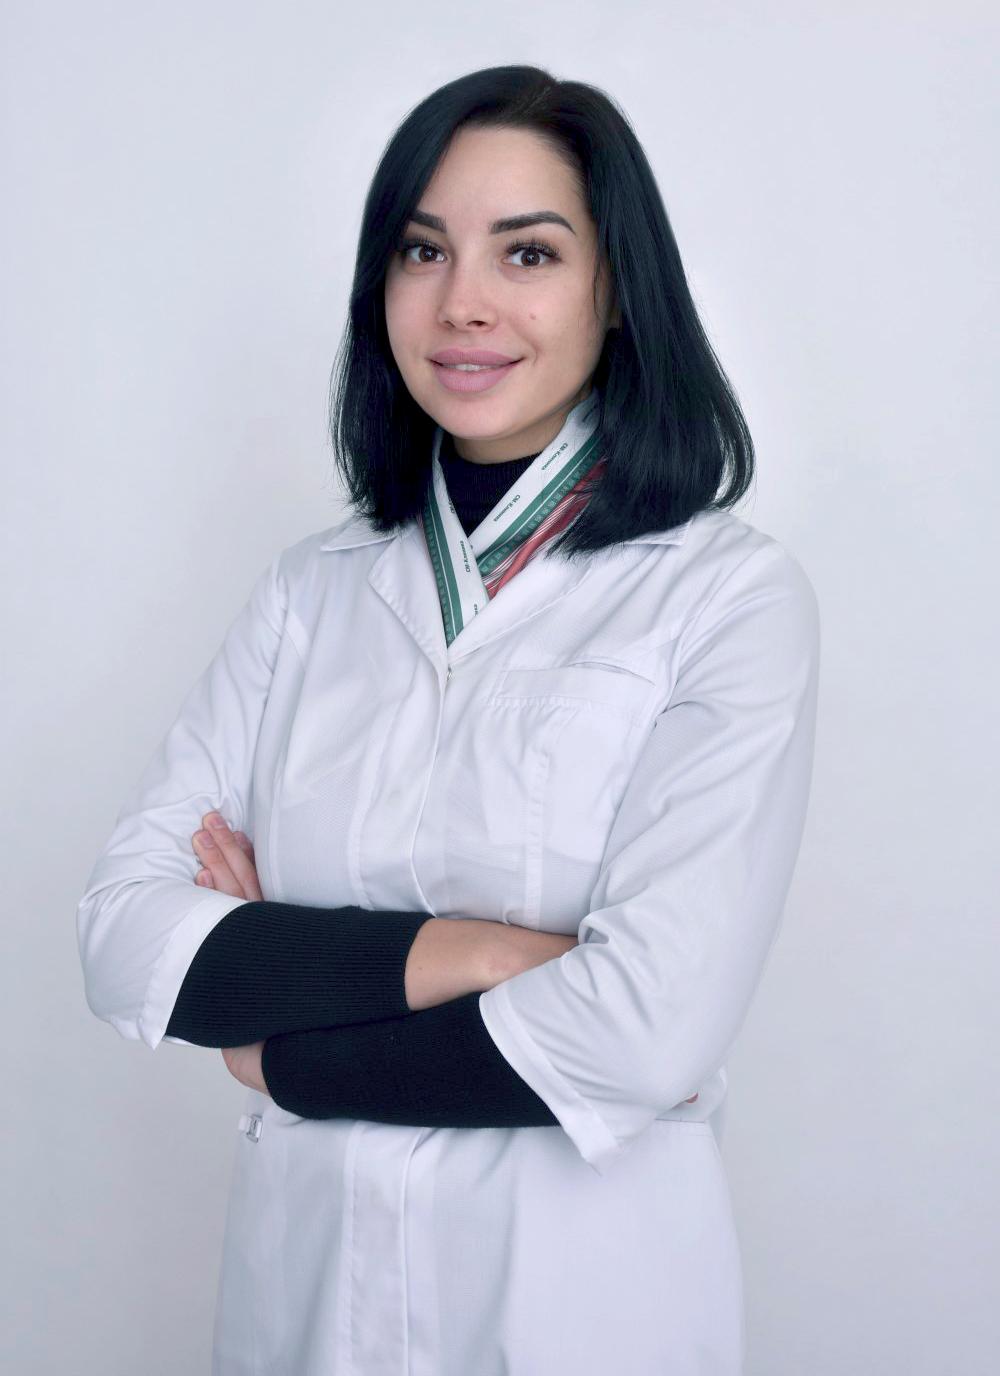 врач-колопроктолог «СМ-Клиника» Арина Батталова